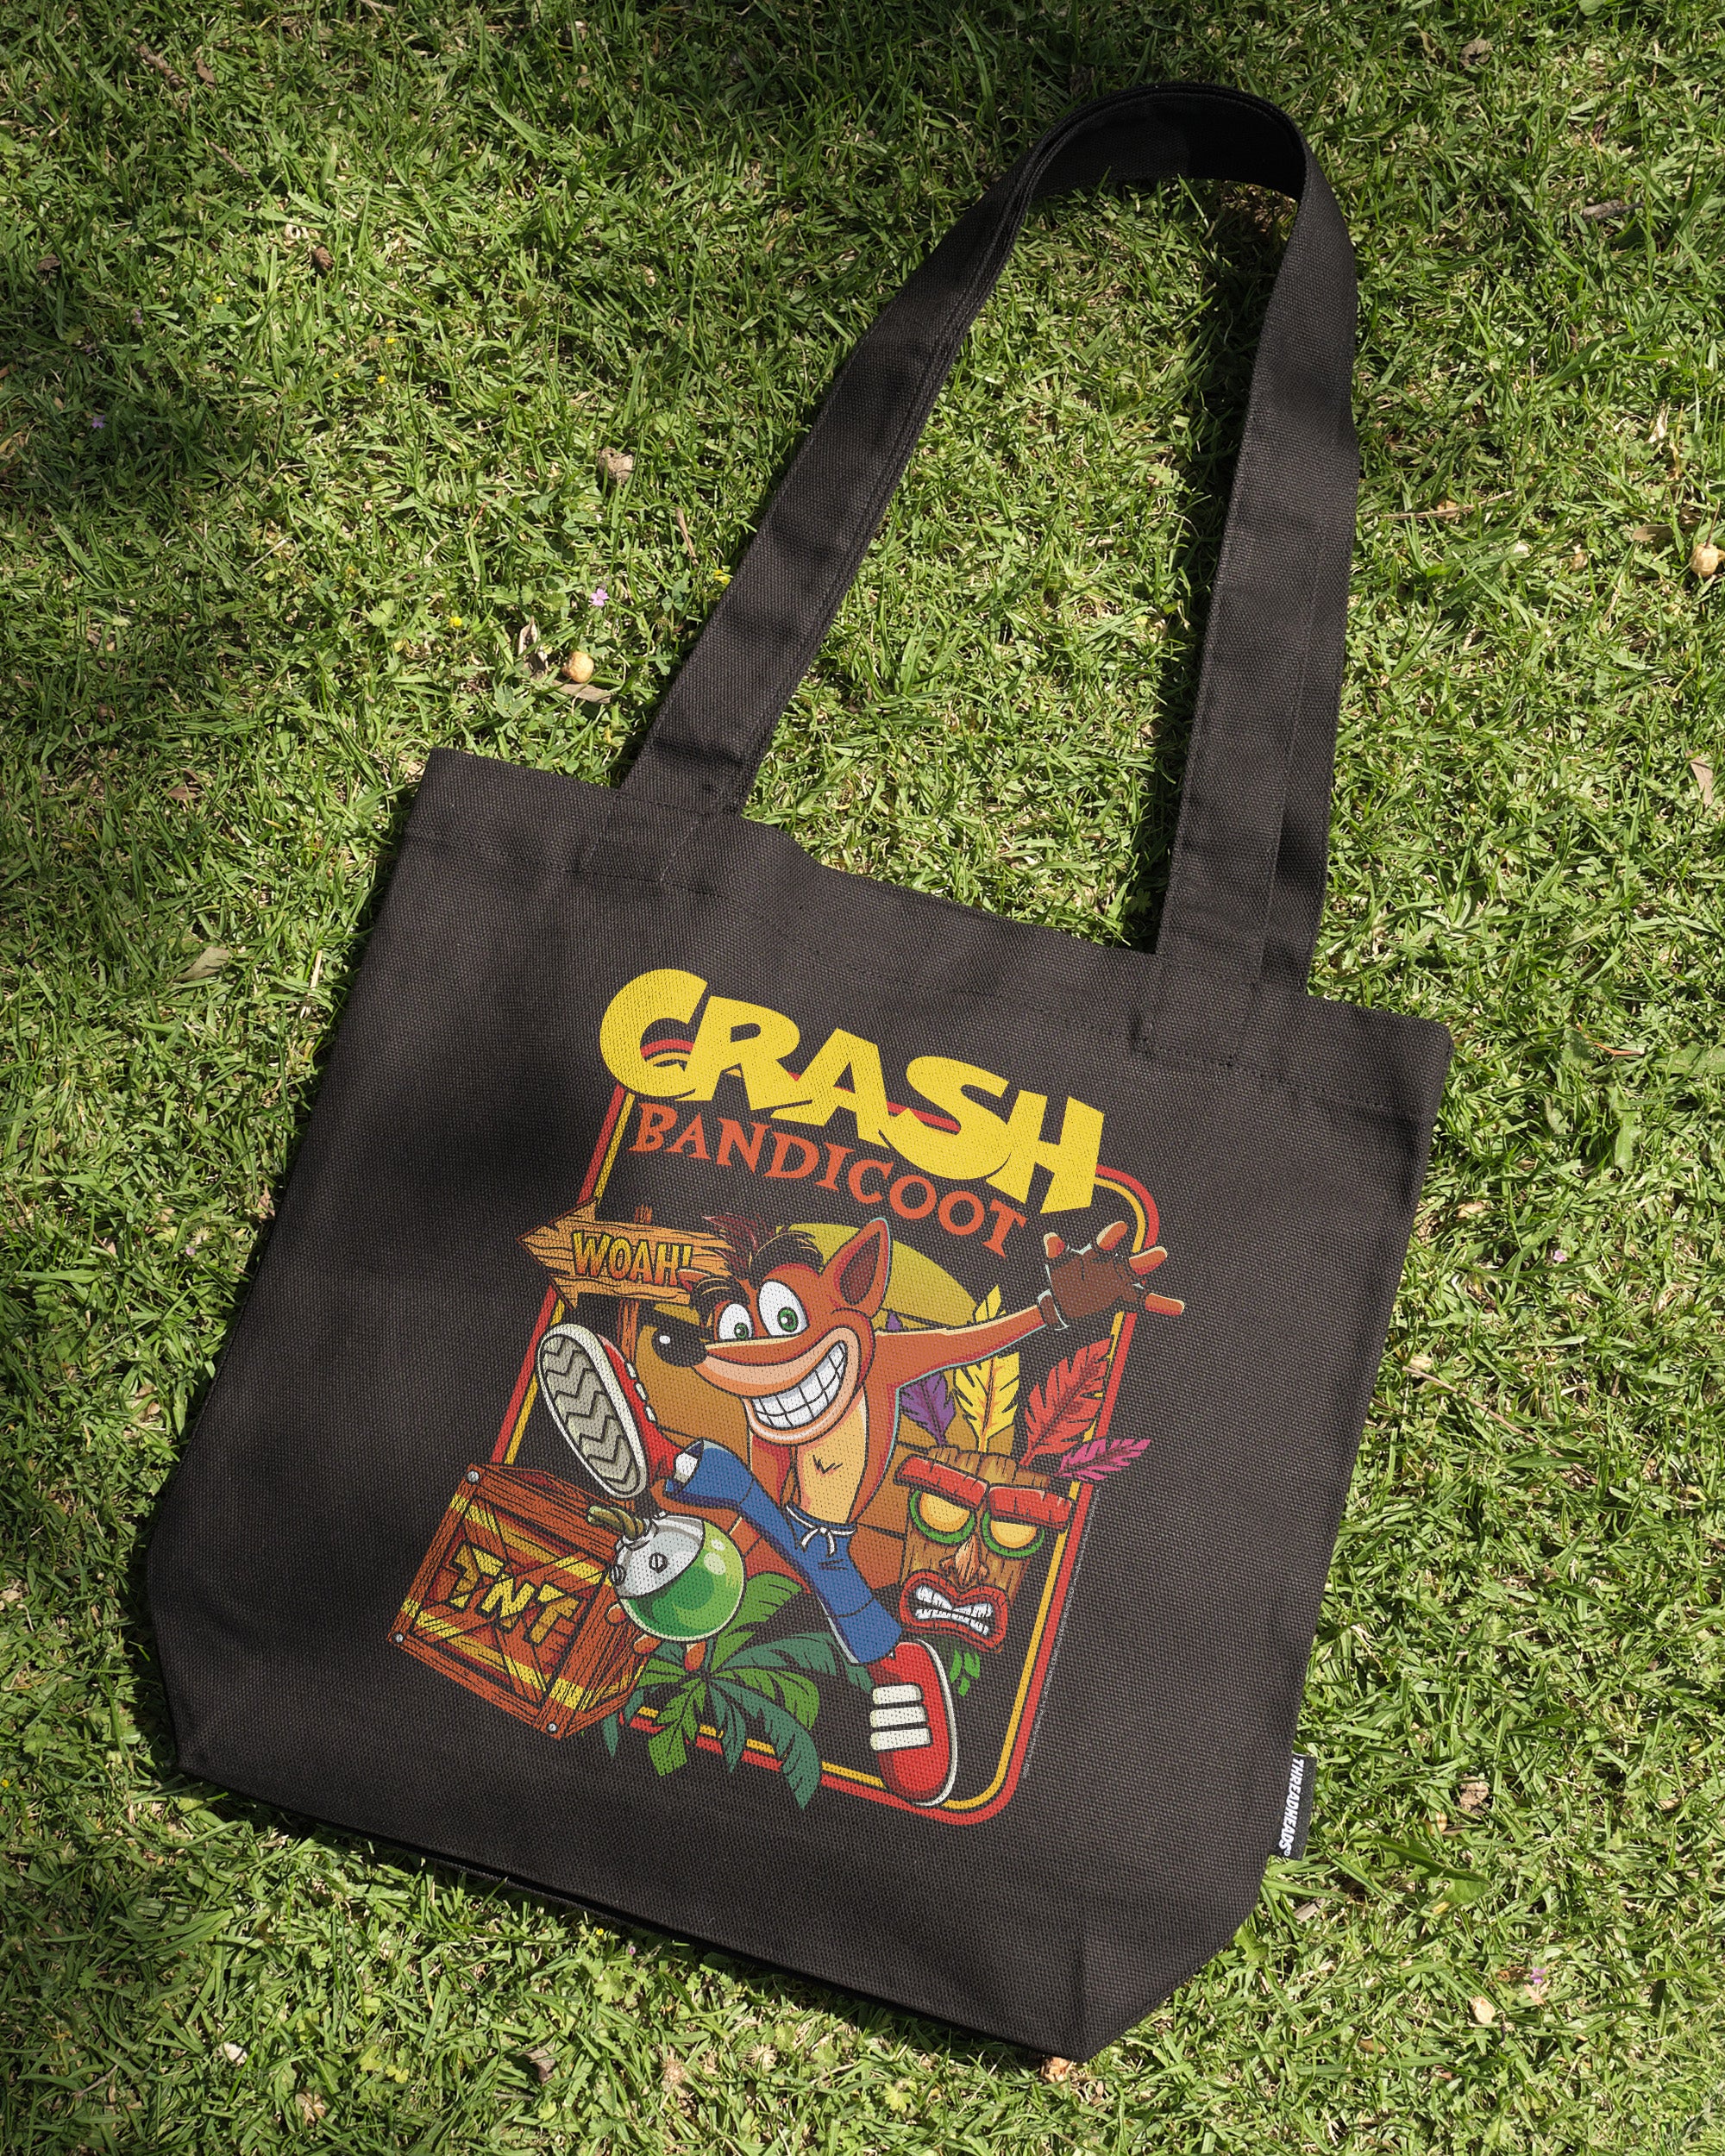 Whoa Crash! Tote Bag